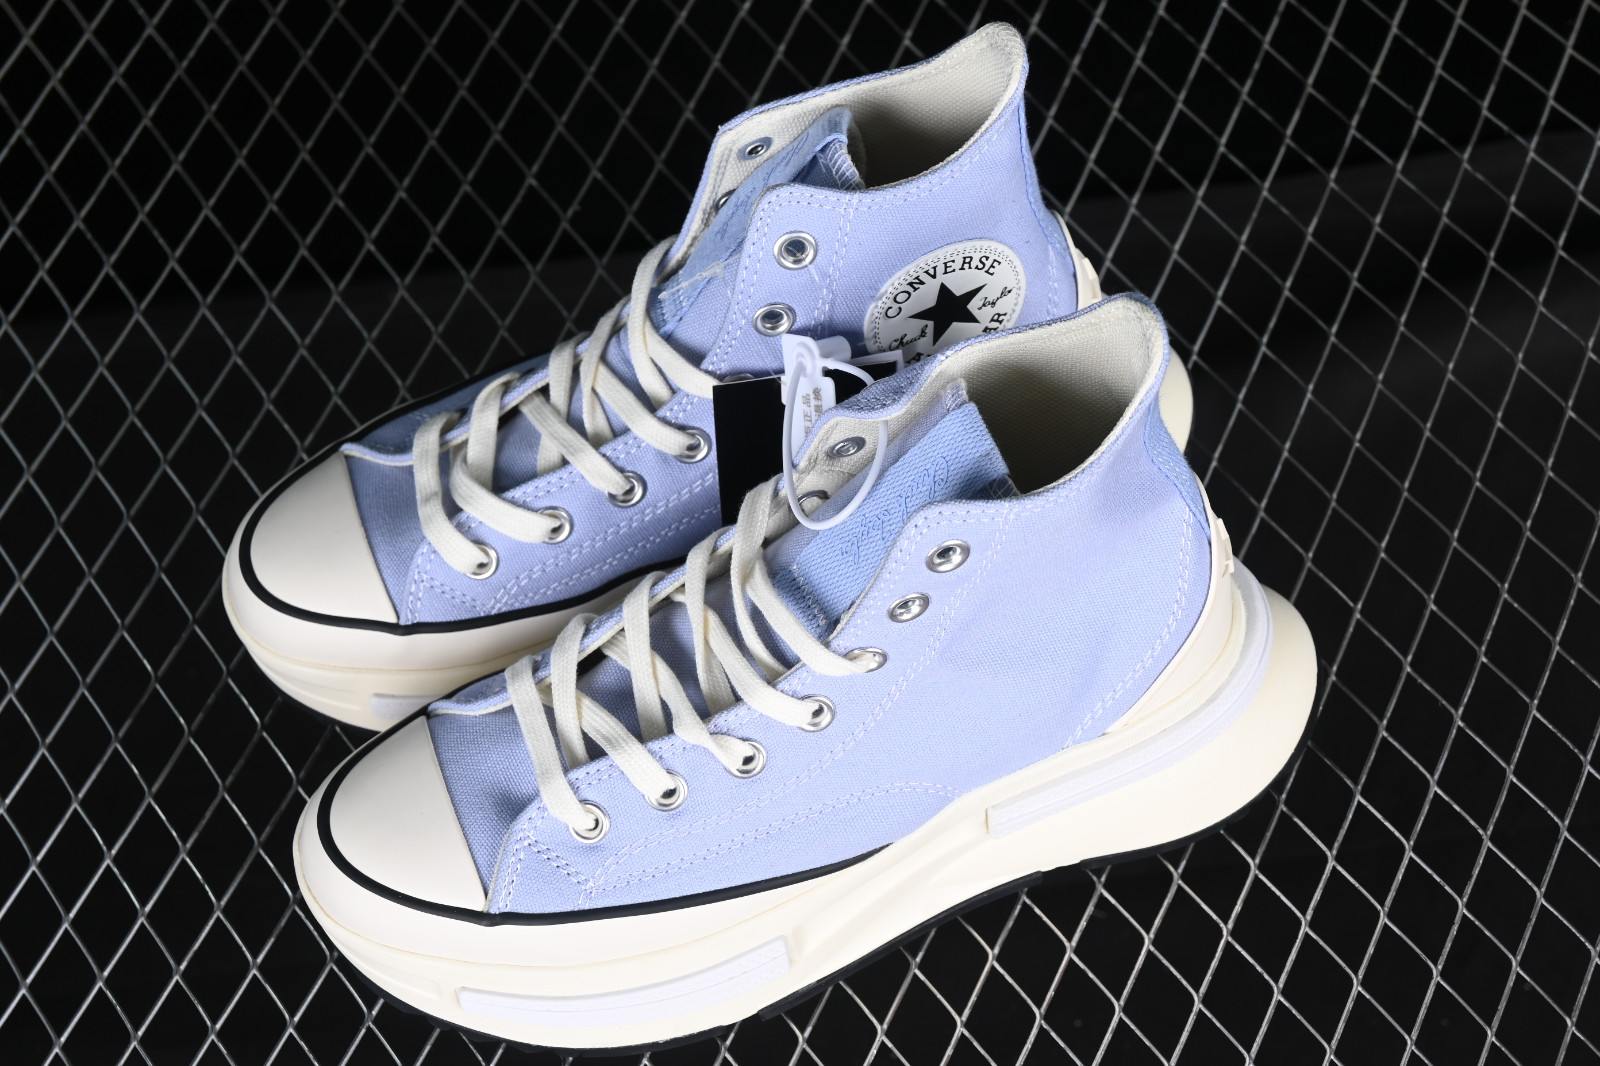 Converse Run Star Legacy CX Sky Blue White A04693C - Converse Shoes ...